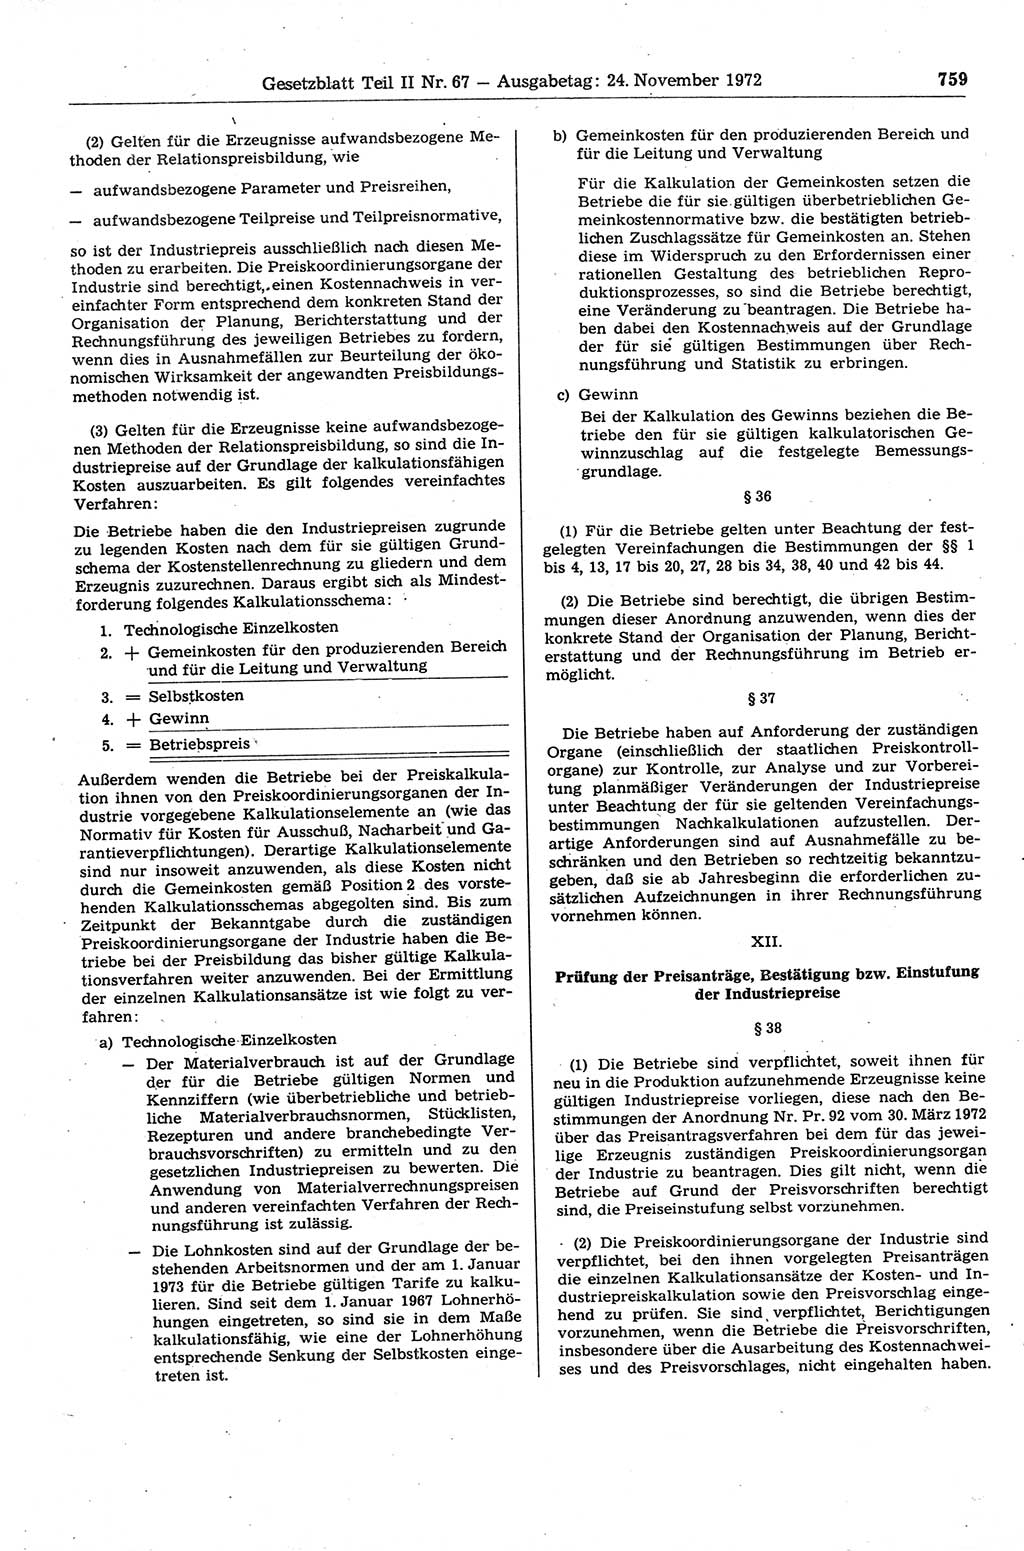 Gesetzblatt (GBl.) der Deutschen Demokratischen Republik (DDR) Teil ⅠⅠ 1972, Seite 759 (GBl. DDR ⅠⅠ 1972, S. 759)